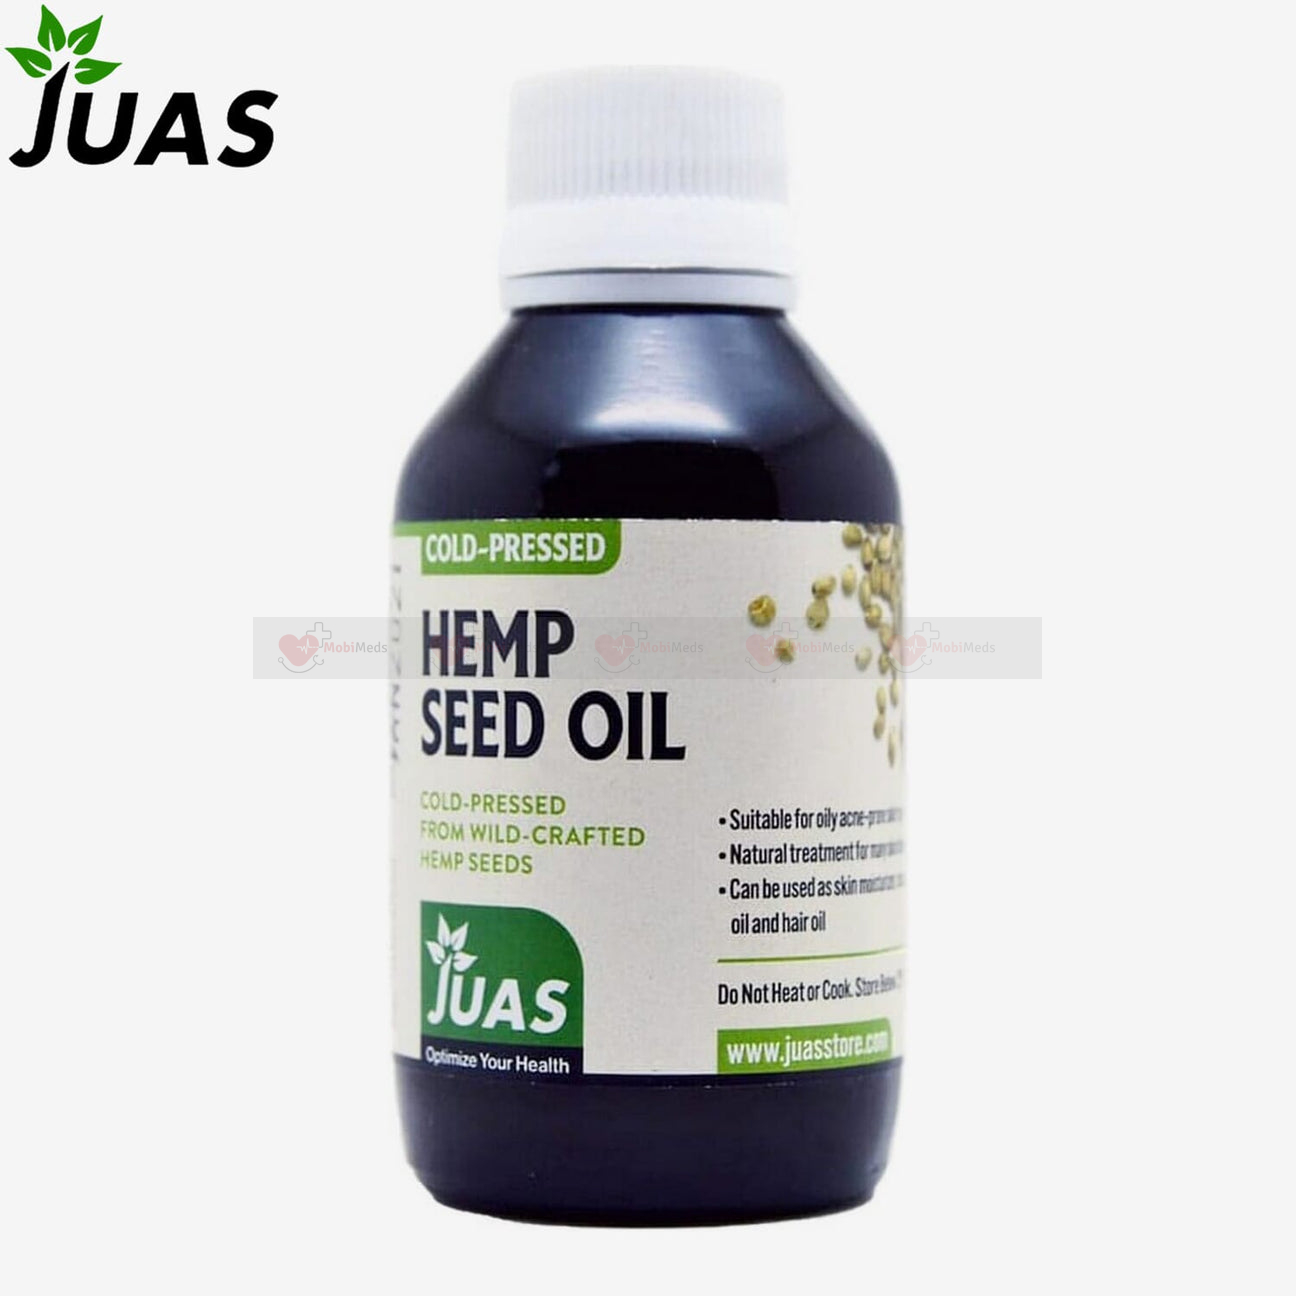 JUAS Hemp Seed Oil - Cold Pressed - 120 ml